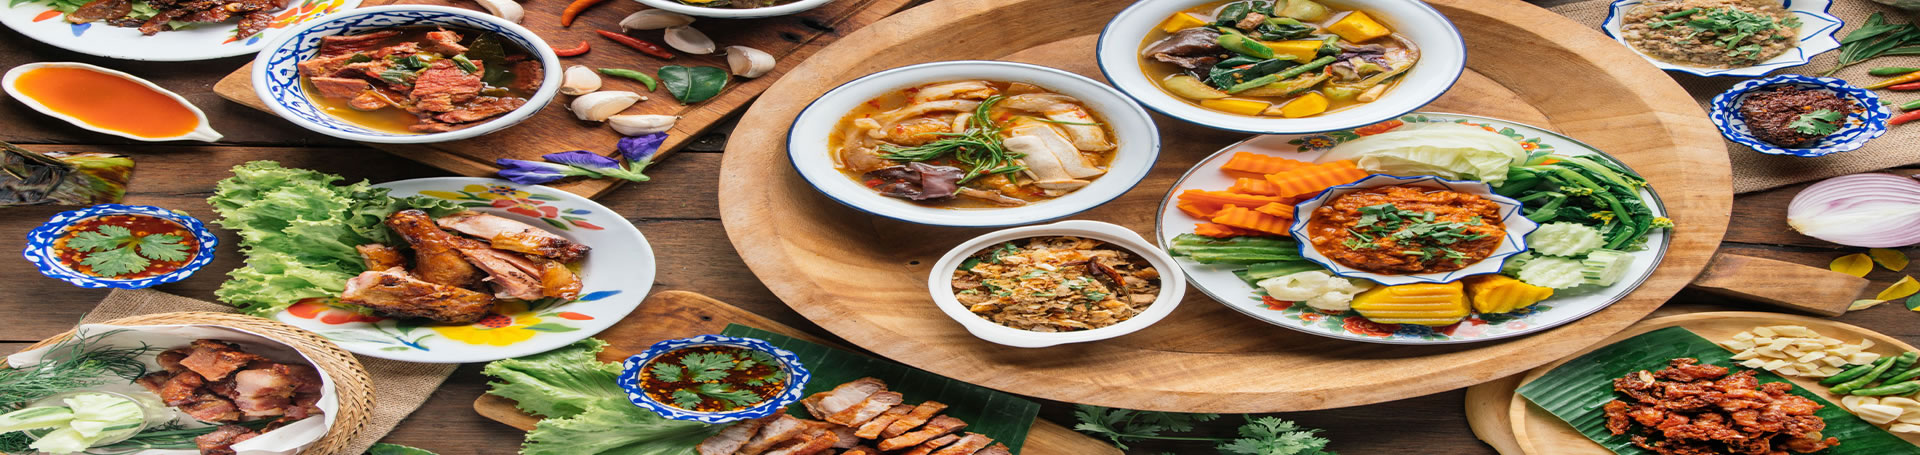 معروف ترین غذاهای تایلندی